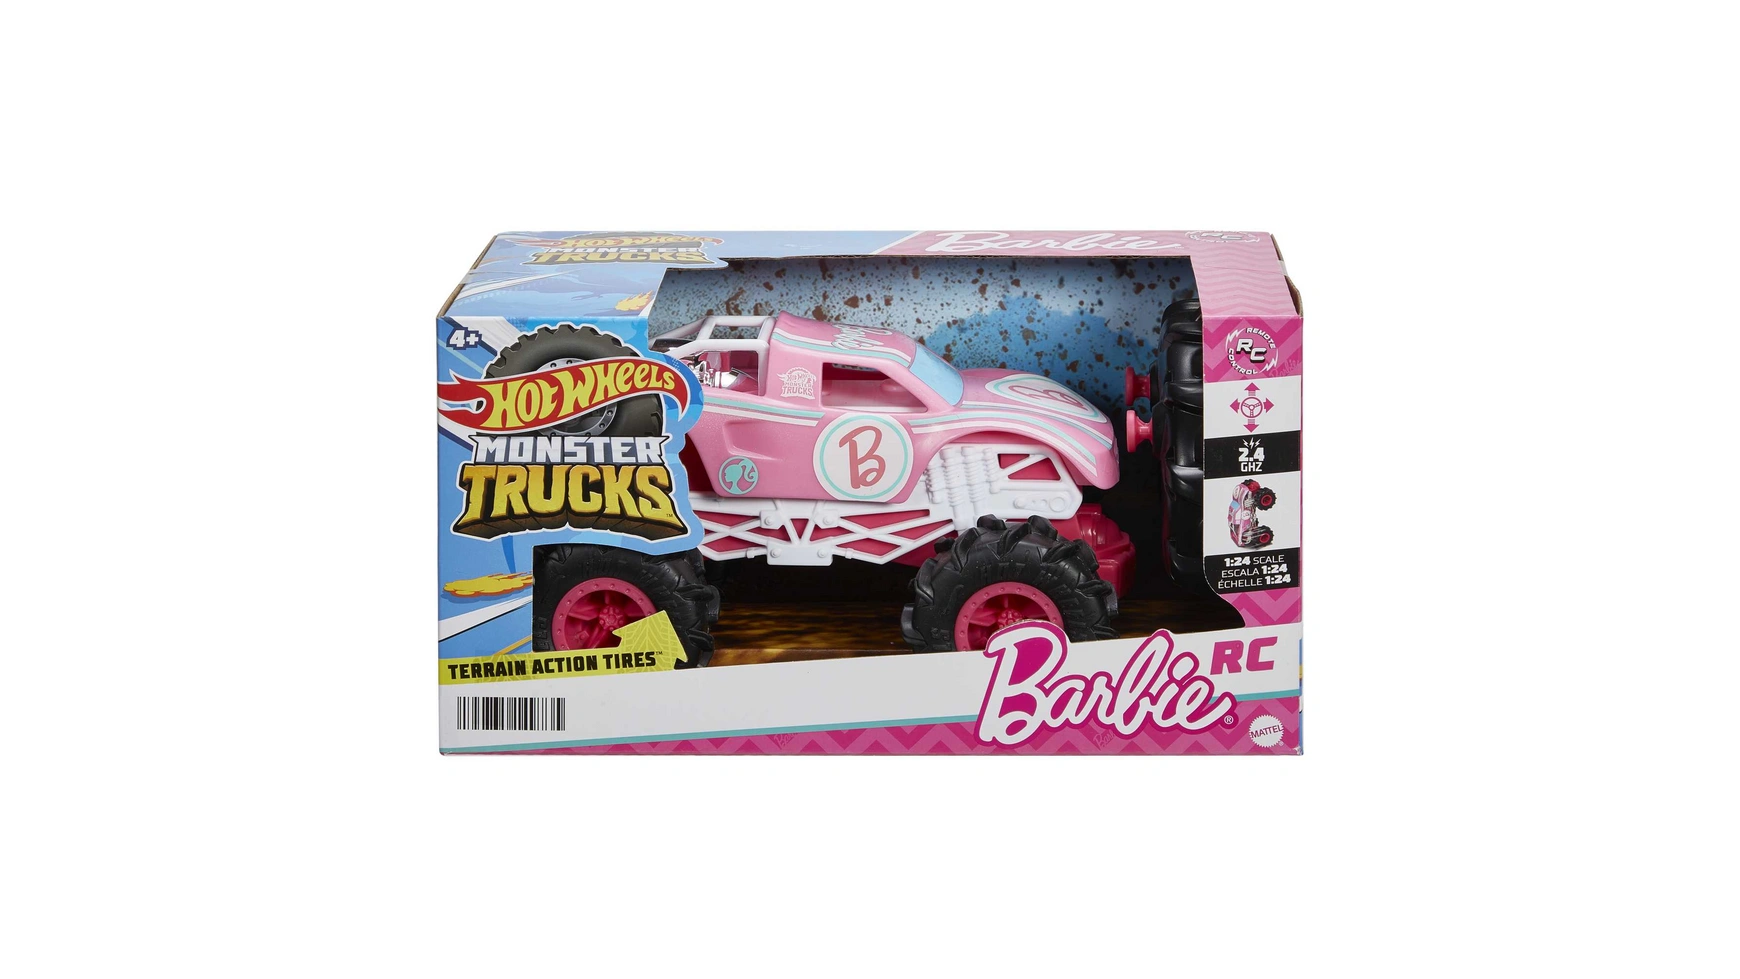 Hot wheels hw r/c mt 1:24 барби Mattel 4 wheels monster trucks inertia car toys for kids boys girls